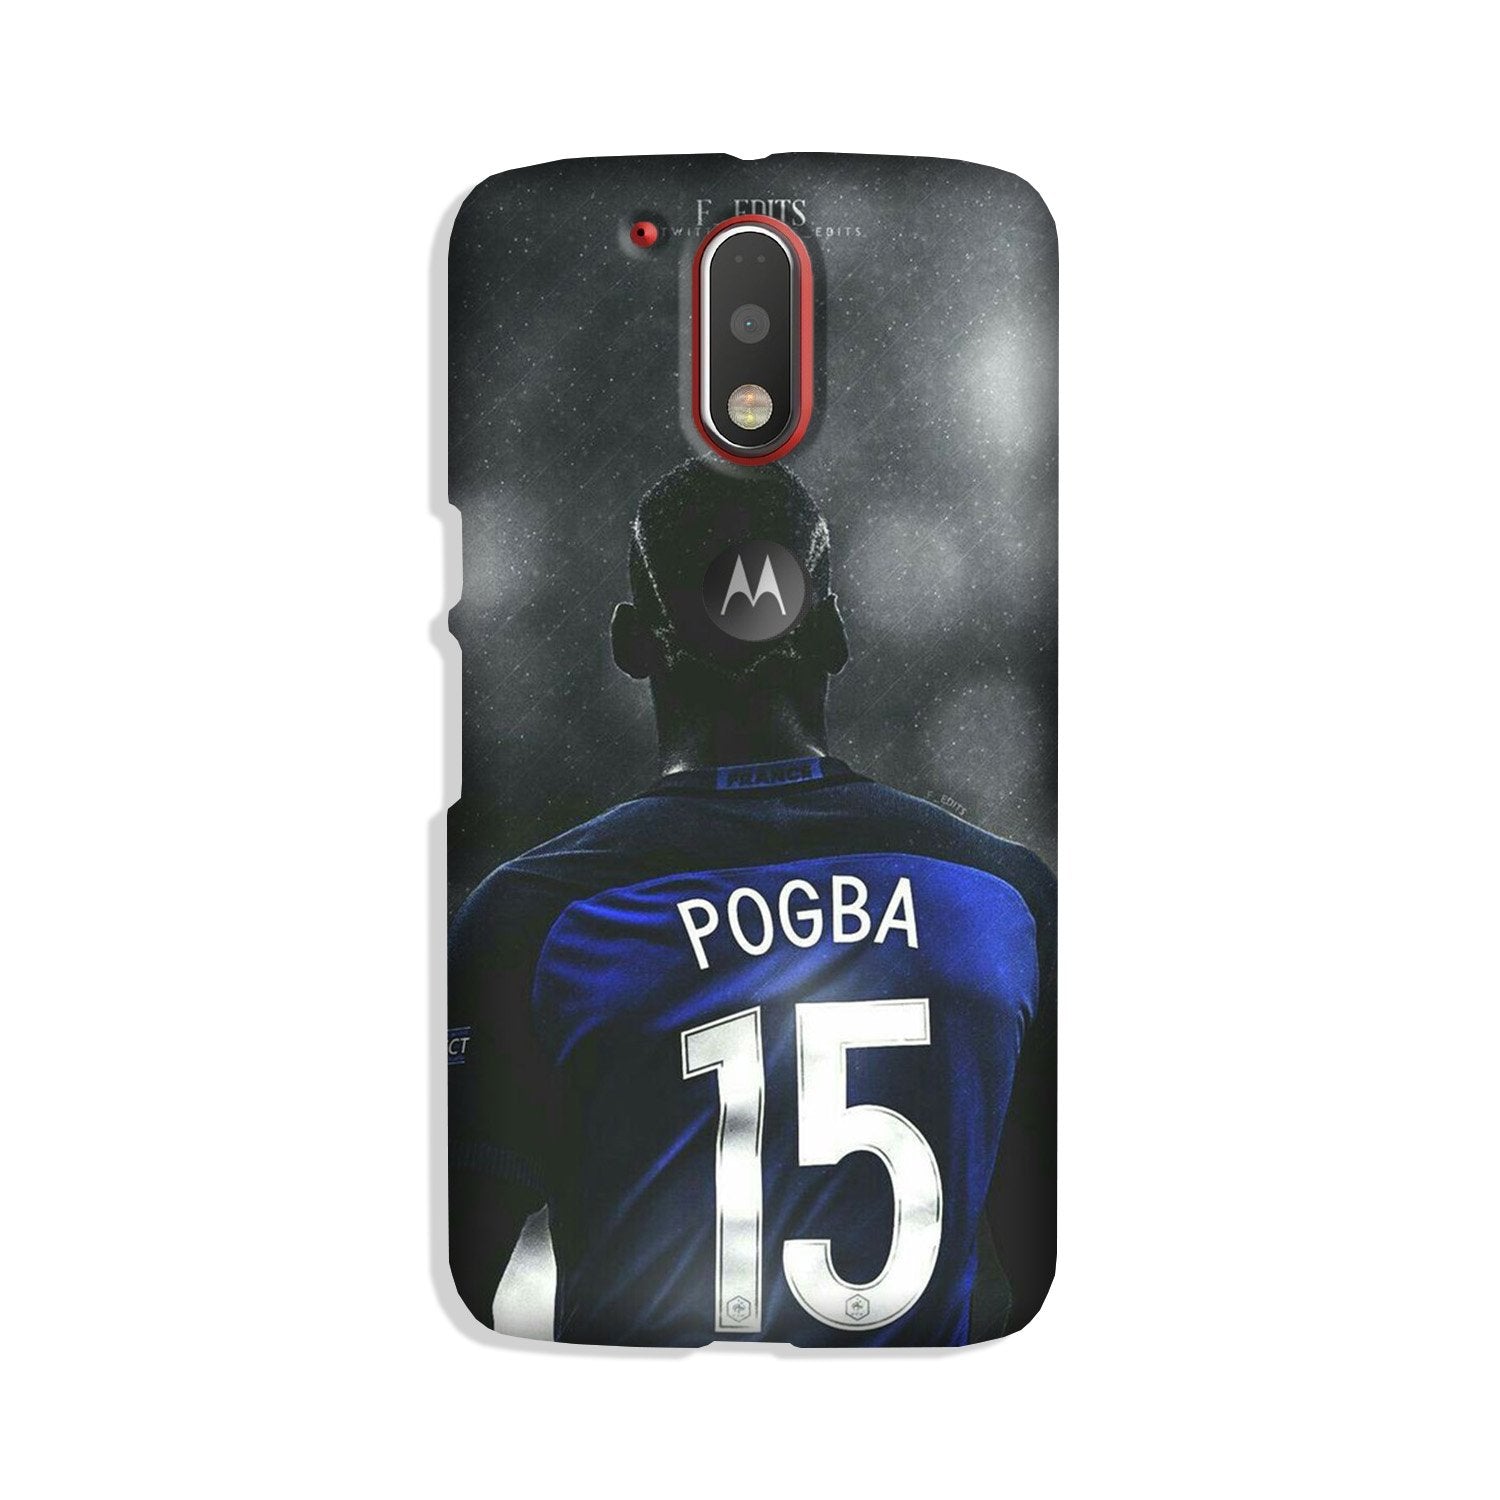 Pogba Case for Moto G4 Plus(Design - 159)